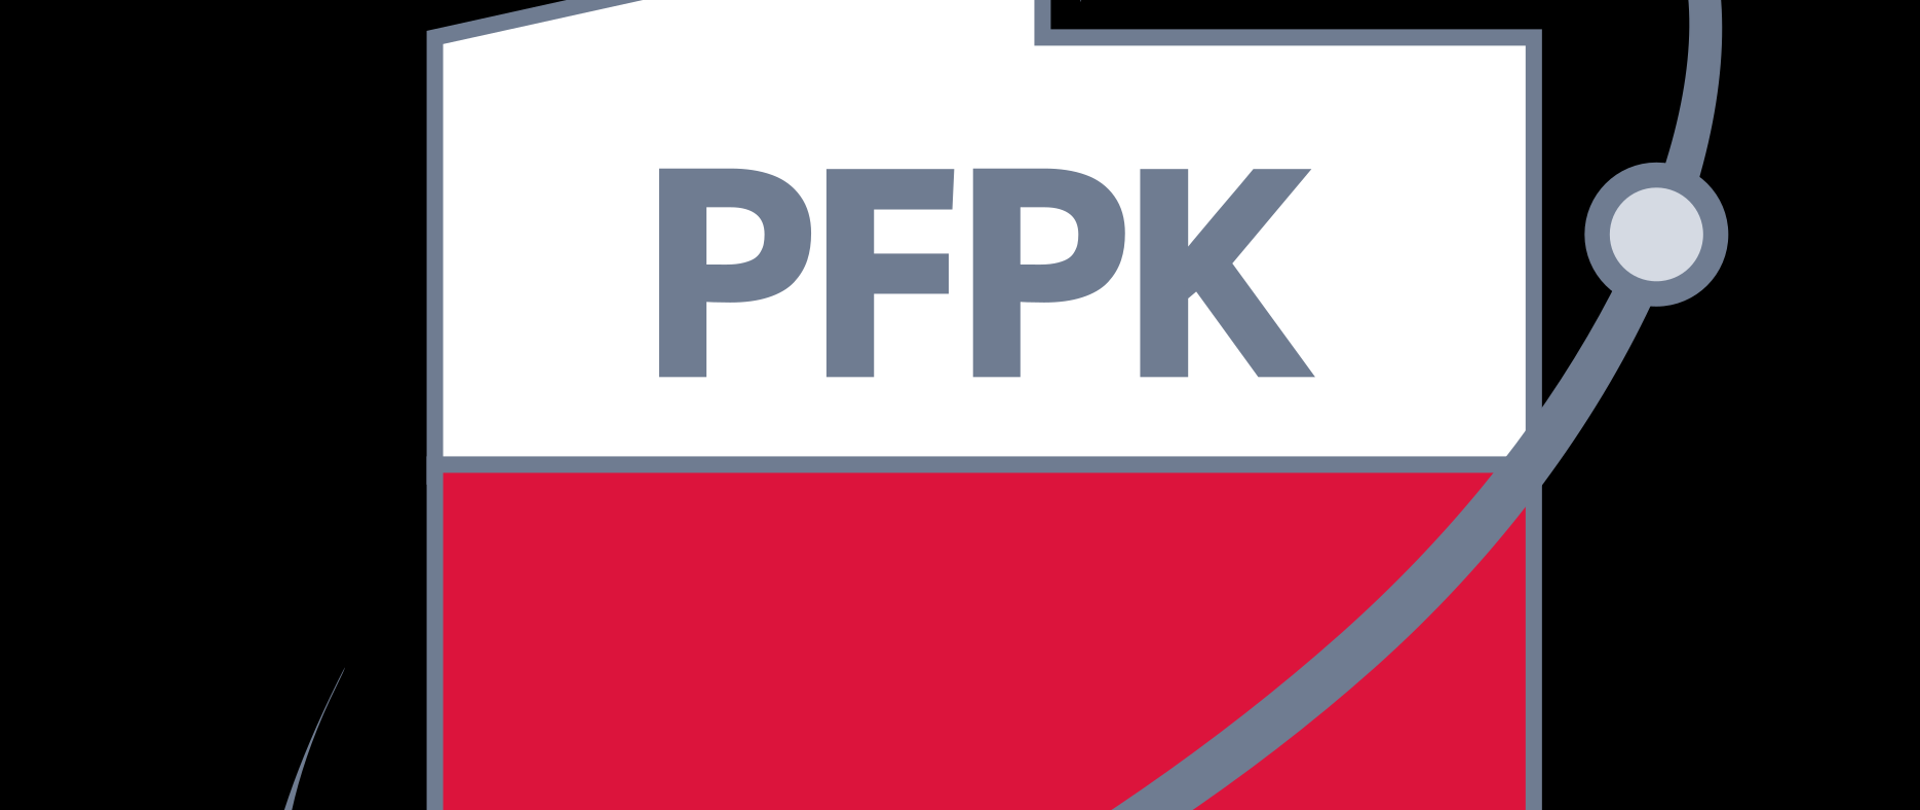 Logo PFPK